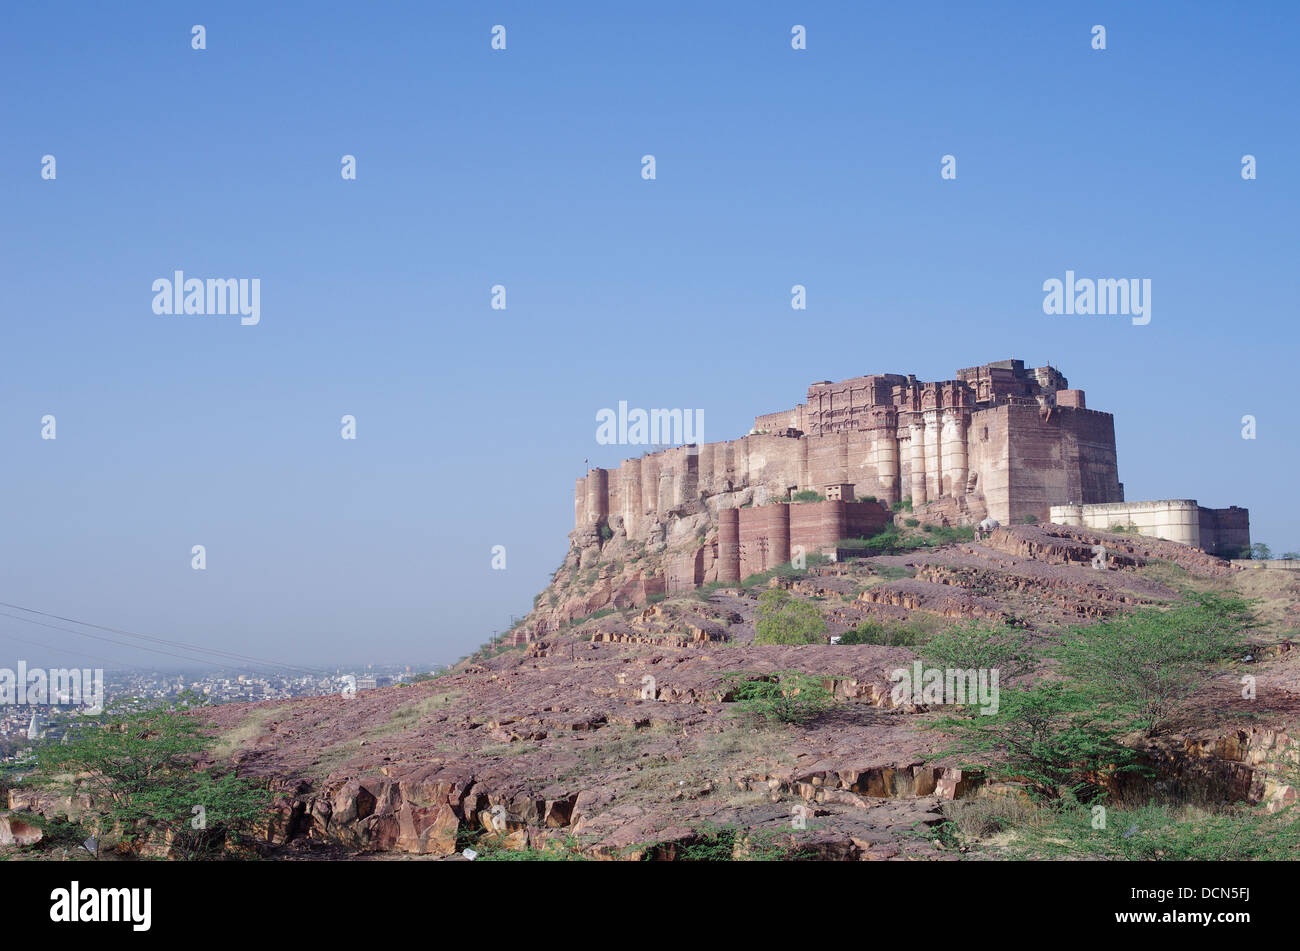 Meherangarh Fort - Jodhpur, Rajashtan, India Stock Photo